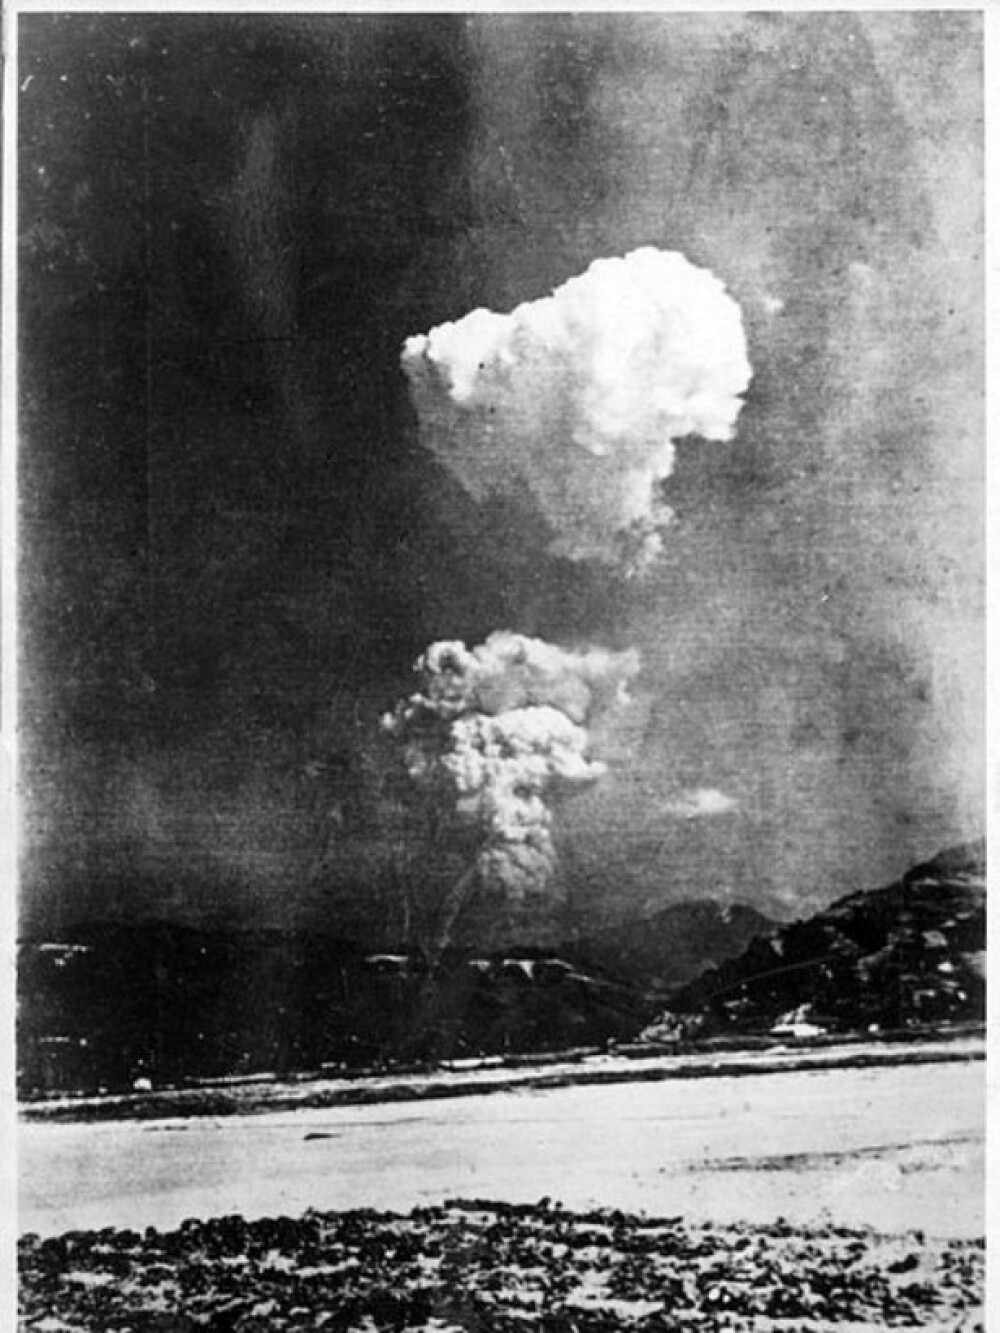 69 de ani de la lansarea primei bombe atomice din istorie, la Hiroshima. Ce ar trebui sa invete omenirea din aceste imagini - Imaginea 6